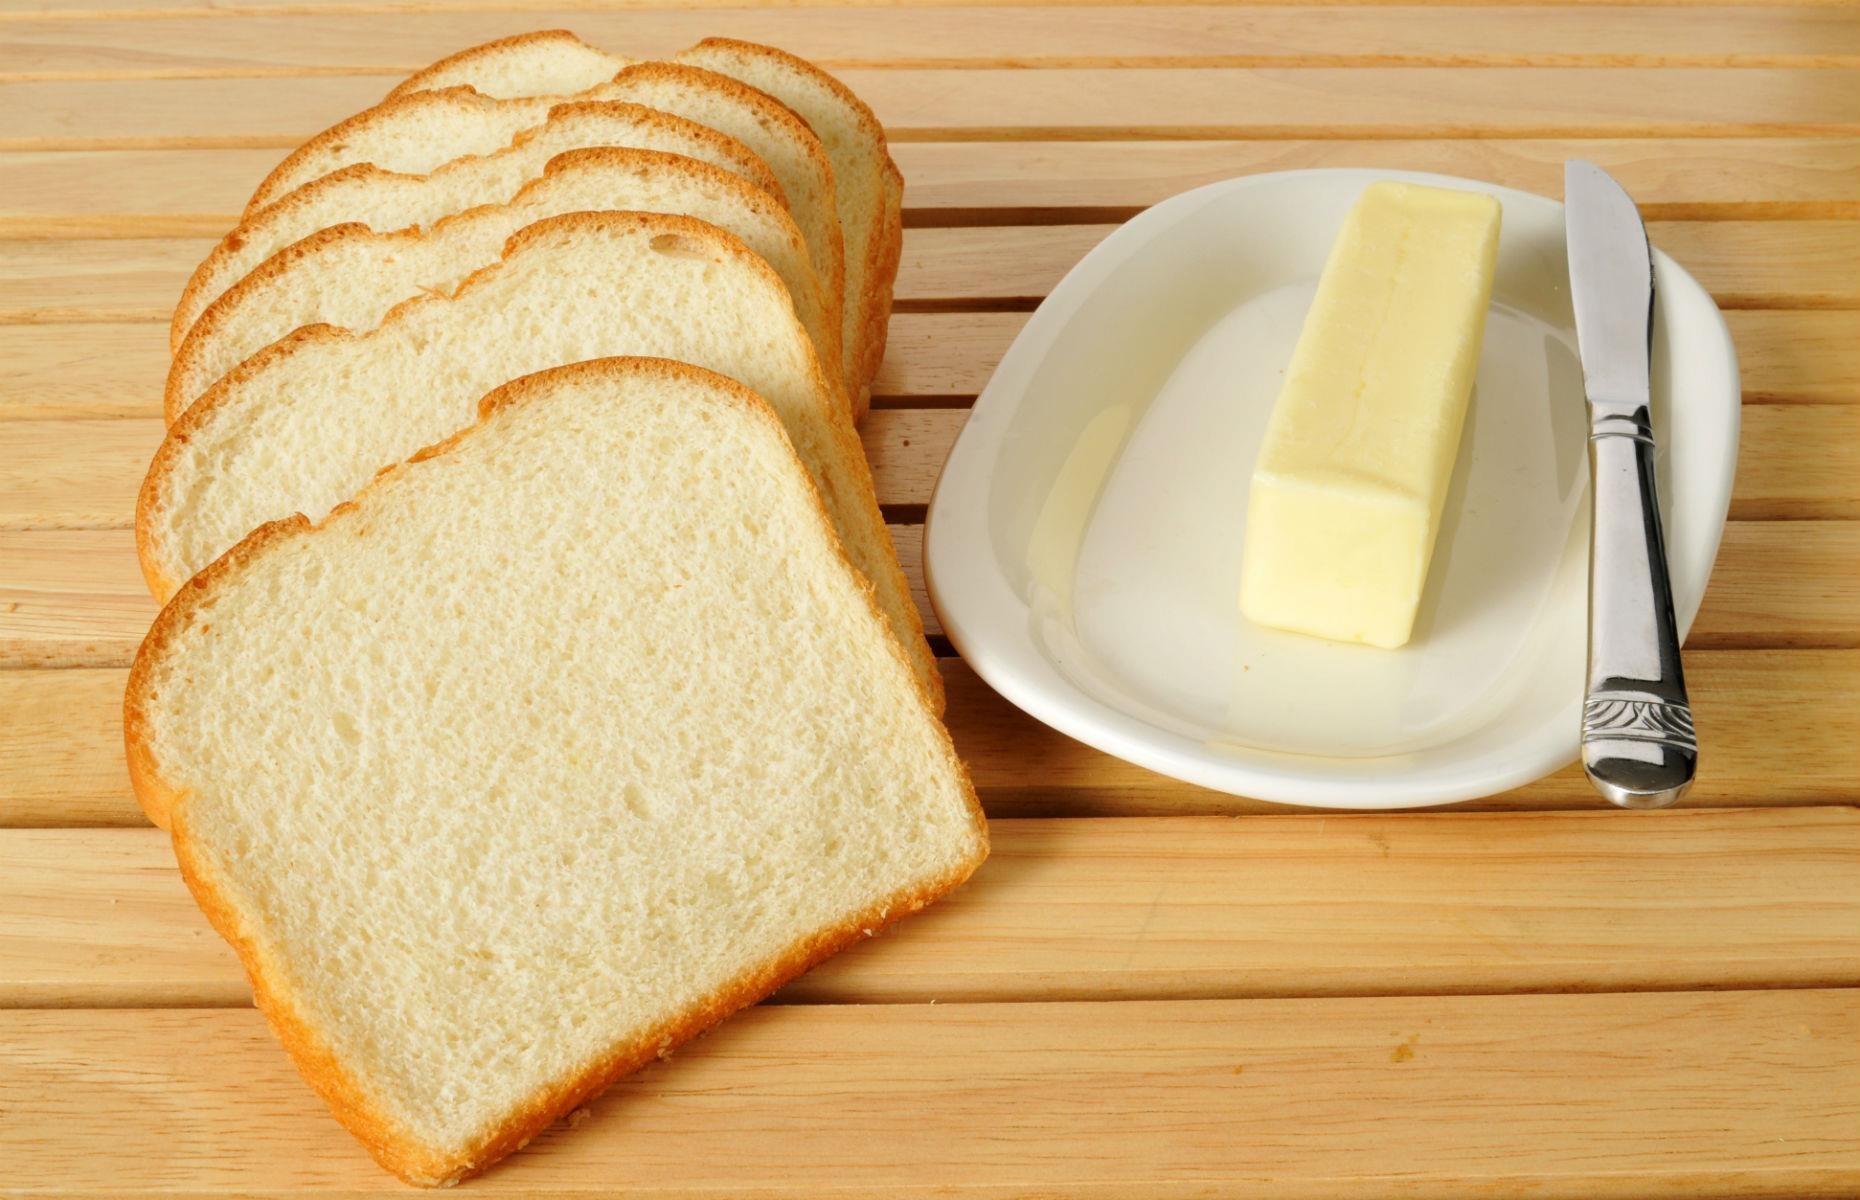 Сливочное масло девочка. Бутерброд с маслом. Хлеб с маслом. Бутерброд хлеб с маслом. Сливочное масло на хлебе.